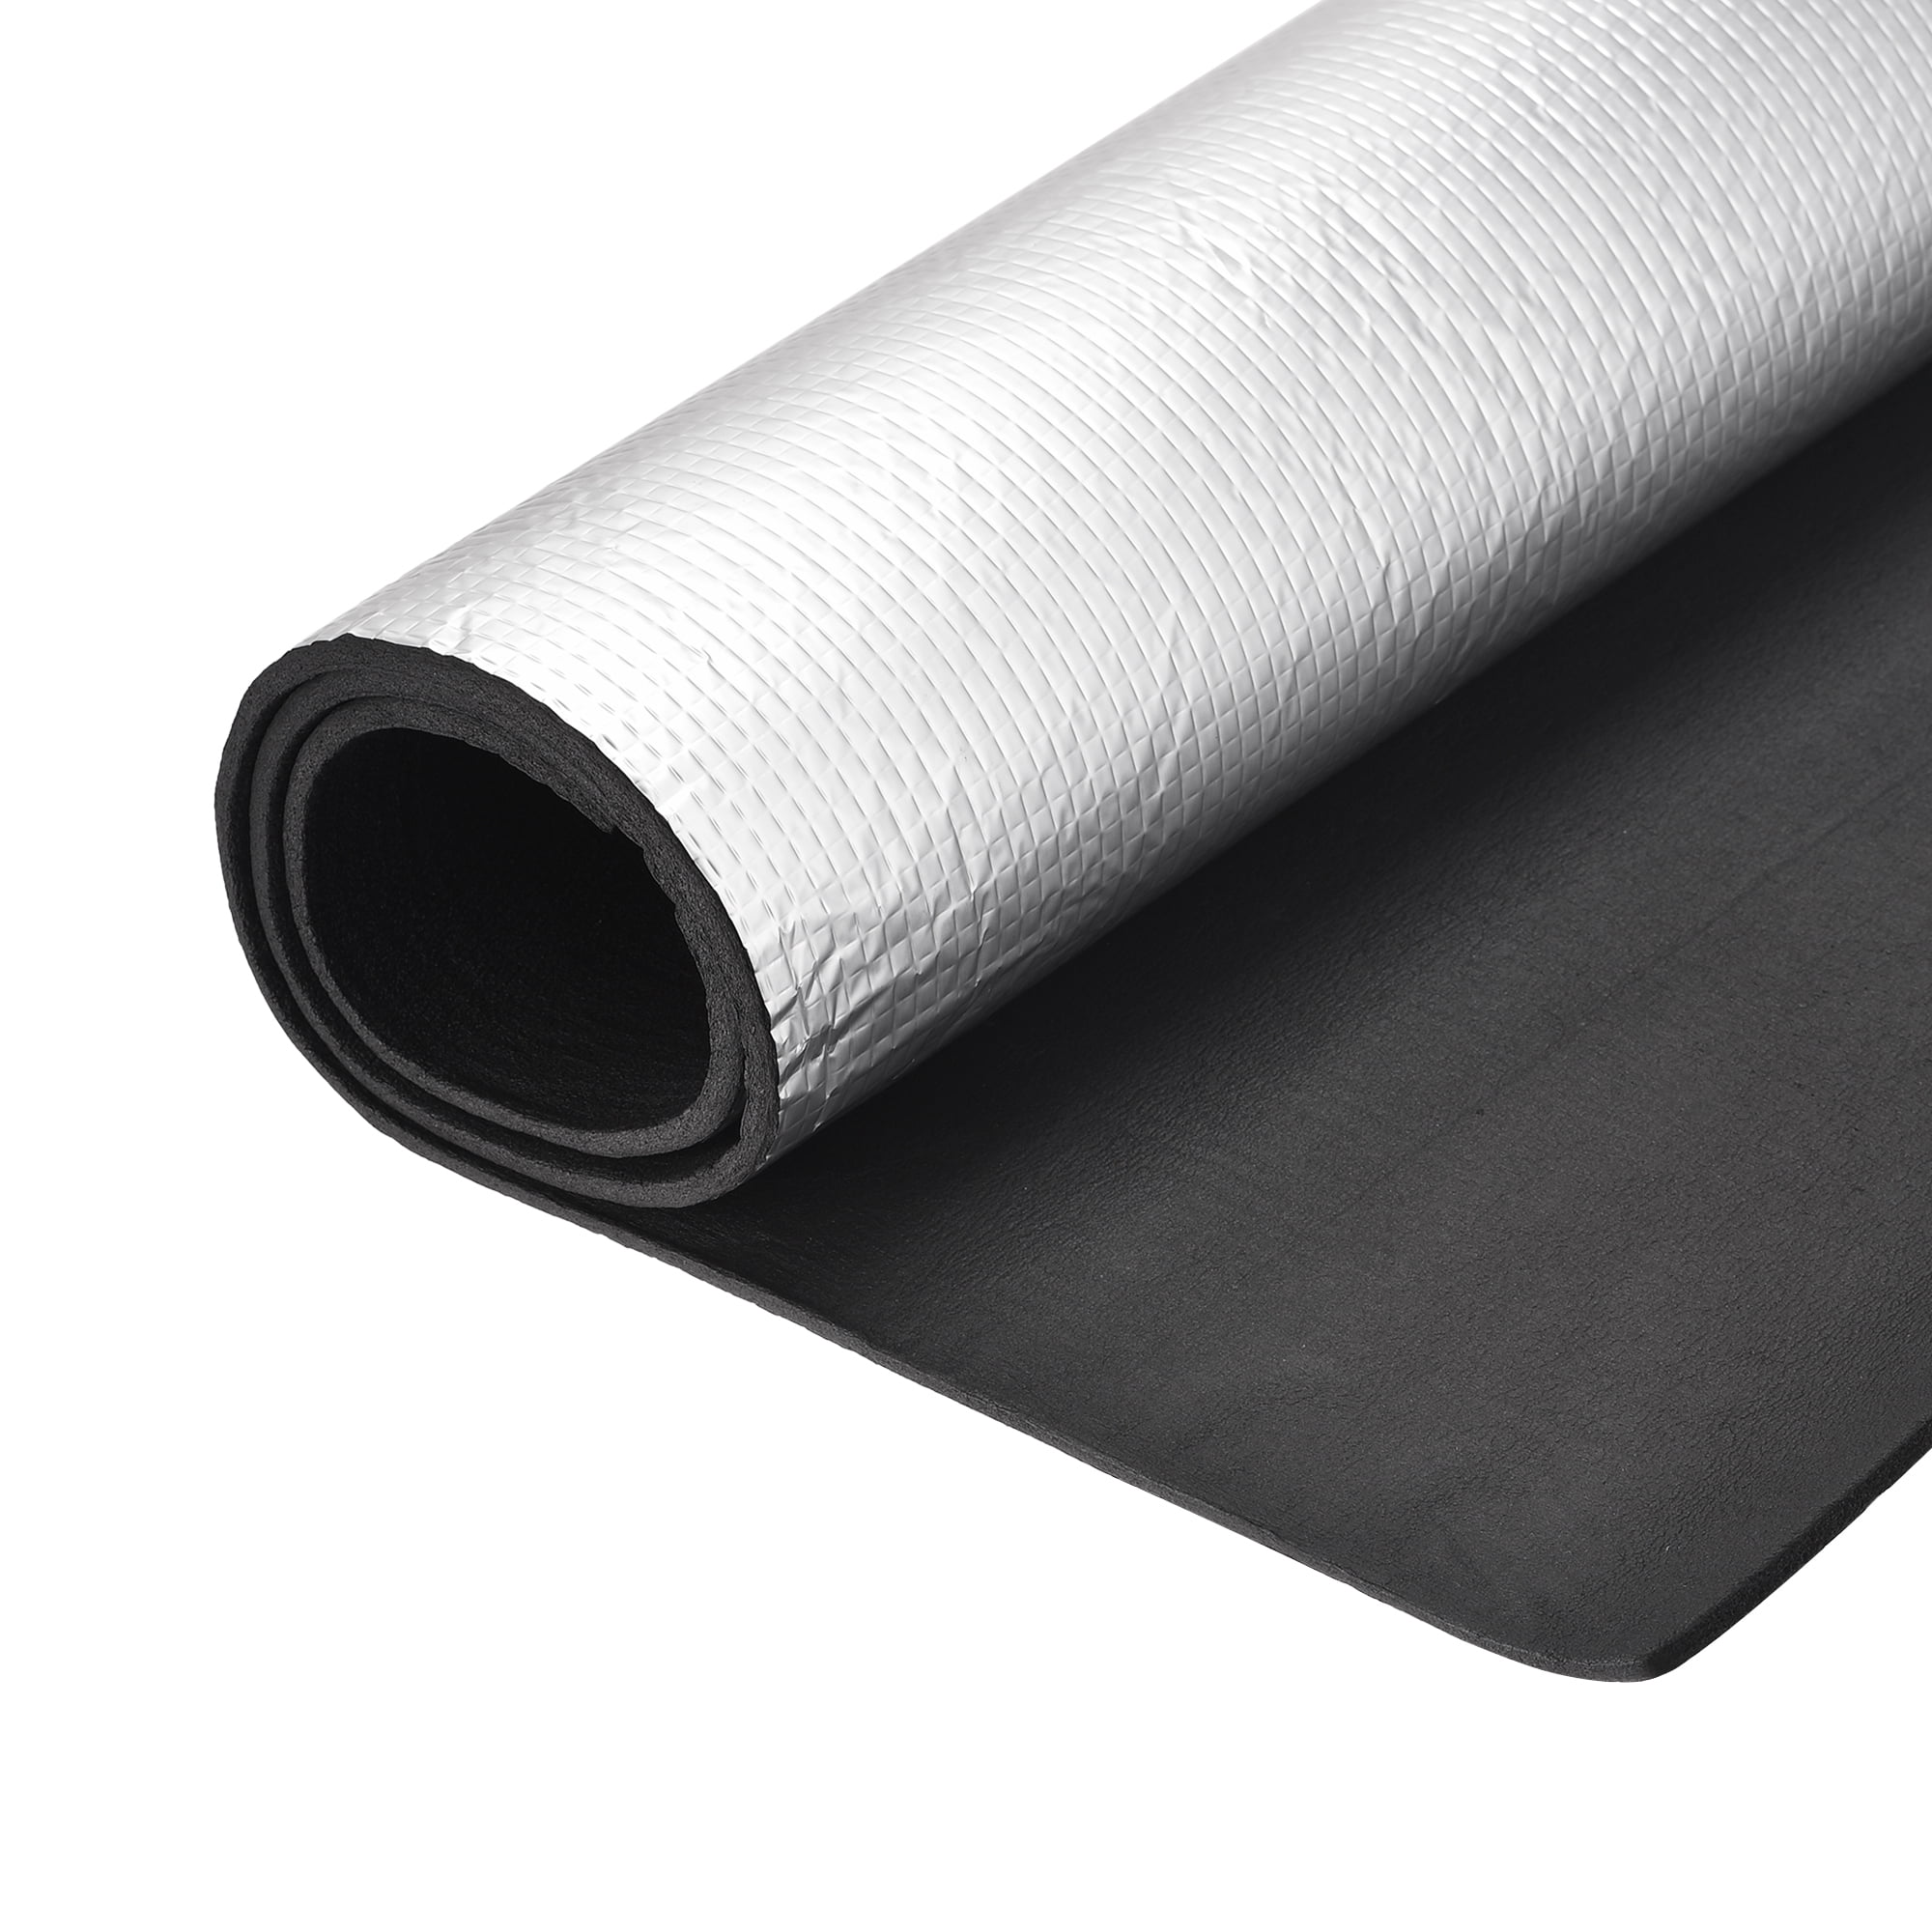 Uxcell 3.3ft x 1.6ft x 0.20'' Waterproof Insulation Sheet Rubber Foam